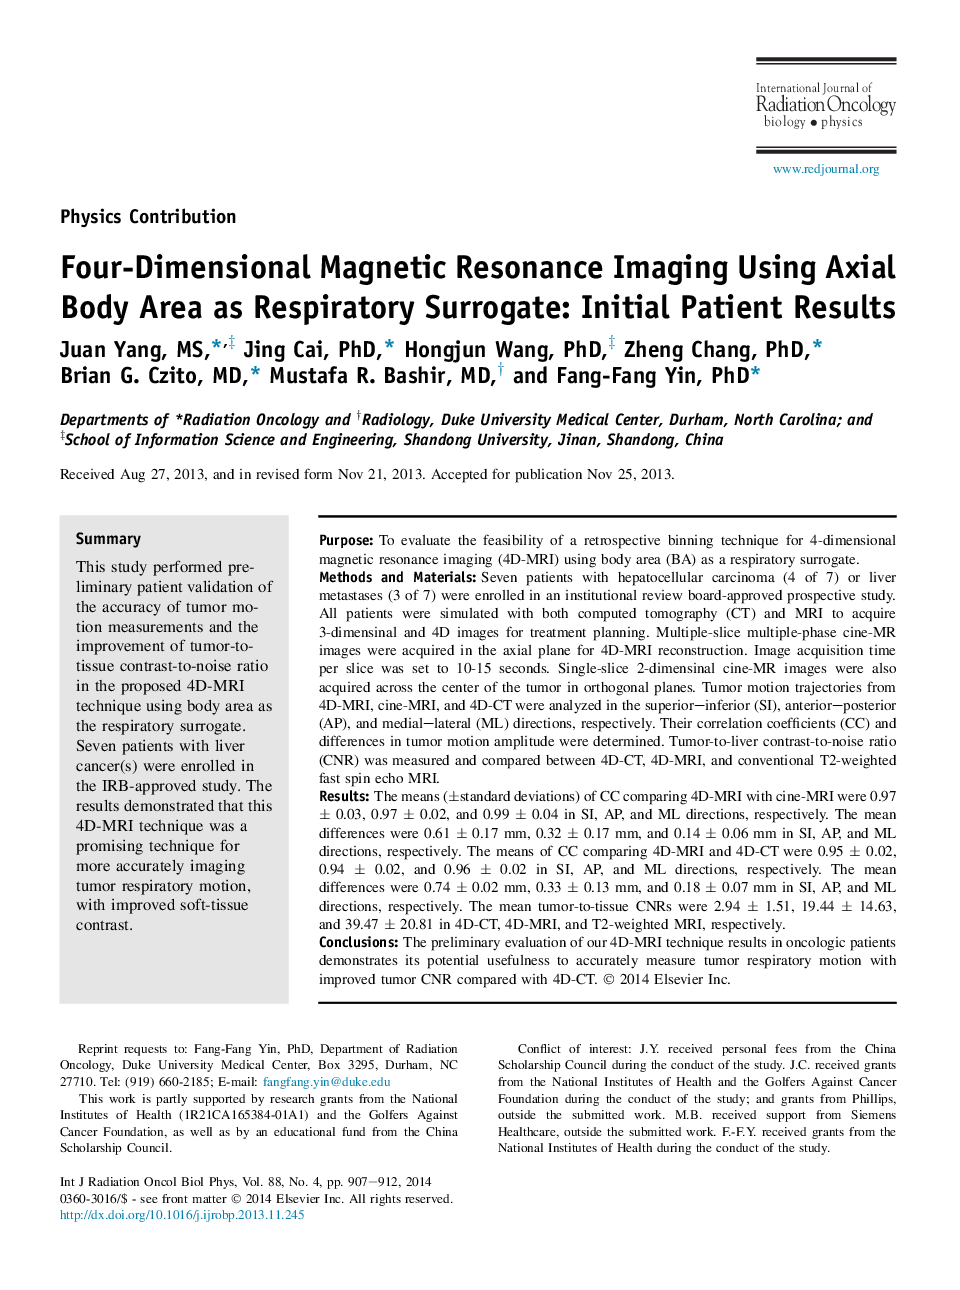 تصویربرداری رزونانس مغناطیسی چهار بعدی با استفاده از محور محوری به عنوان جایگزین تنفسی: نتایج اولیه بیمار 